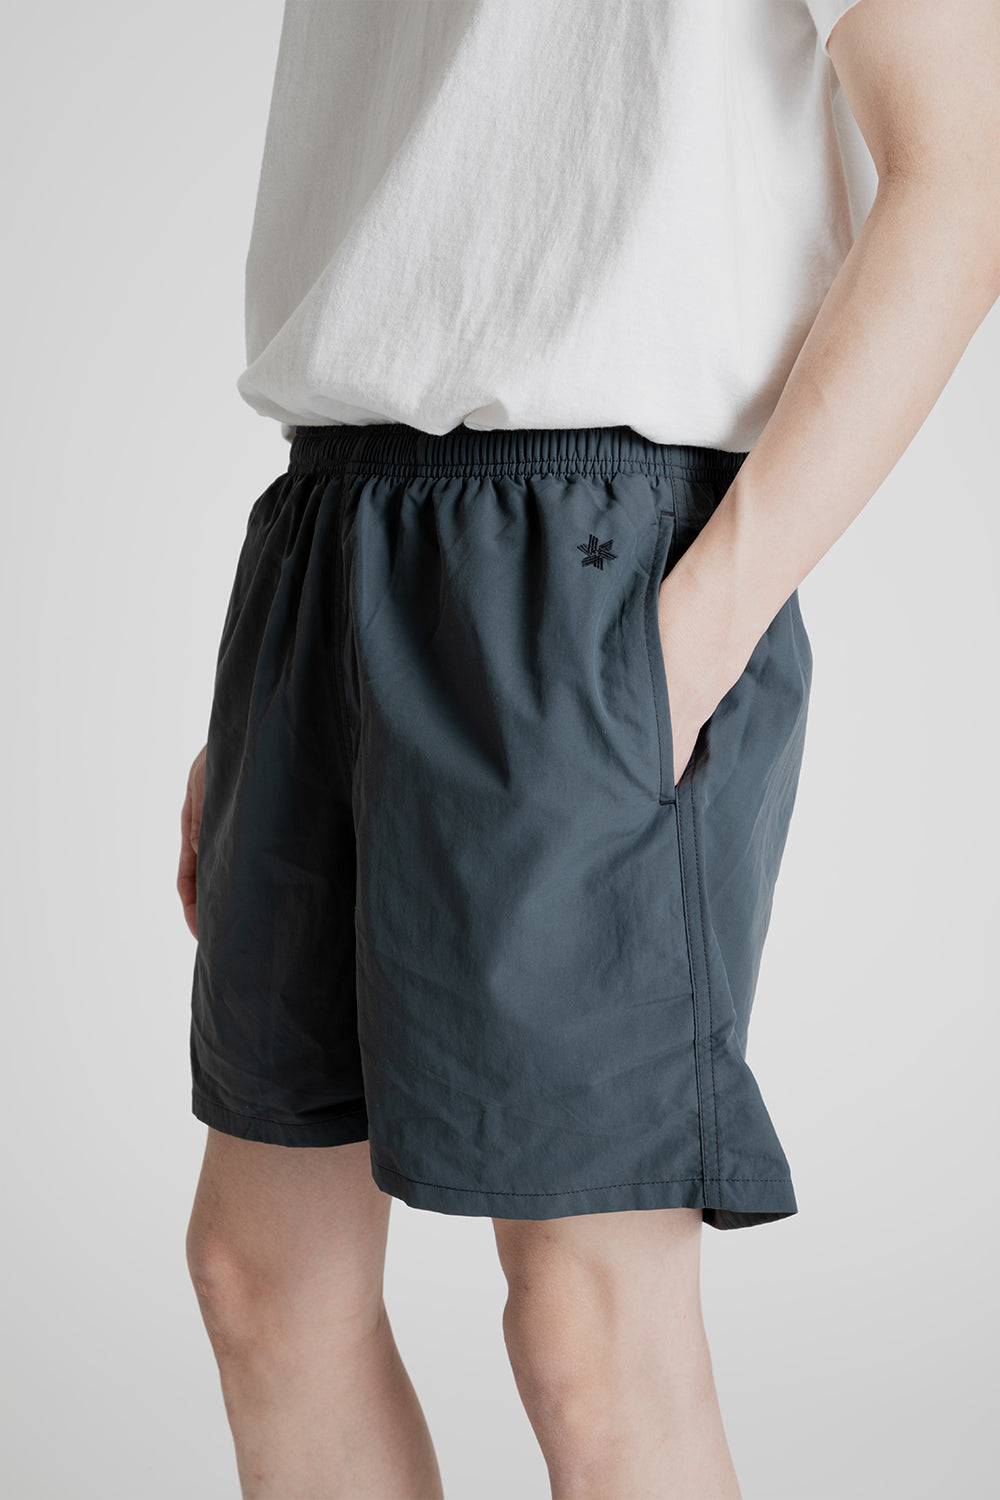 Goldwin Nylon Shorts 5 Inch in Dark Charcoal